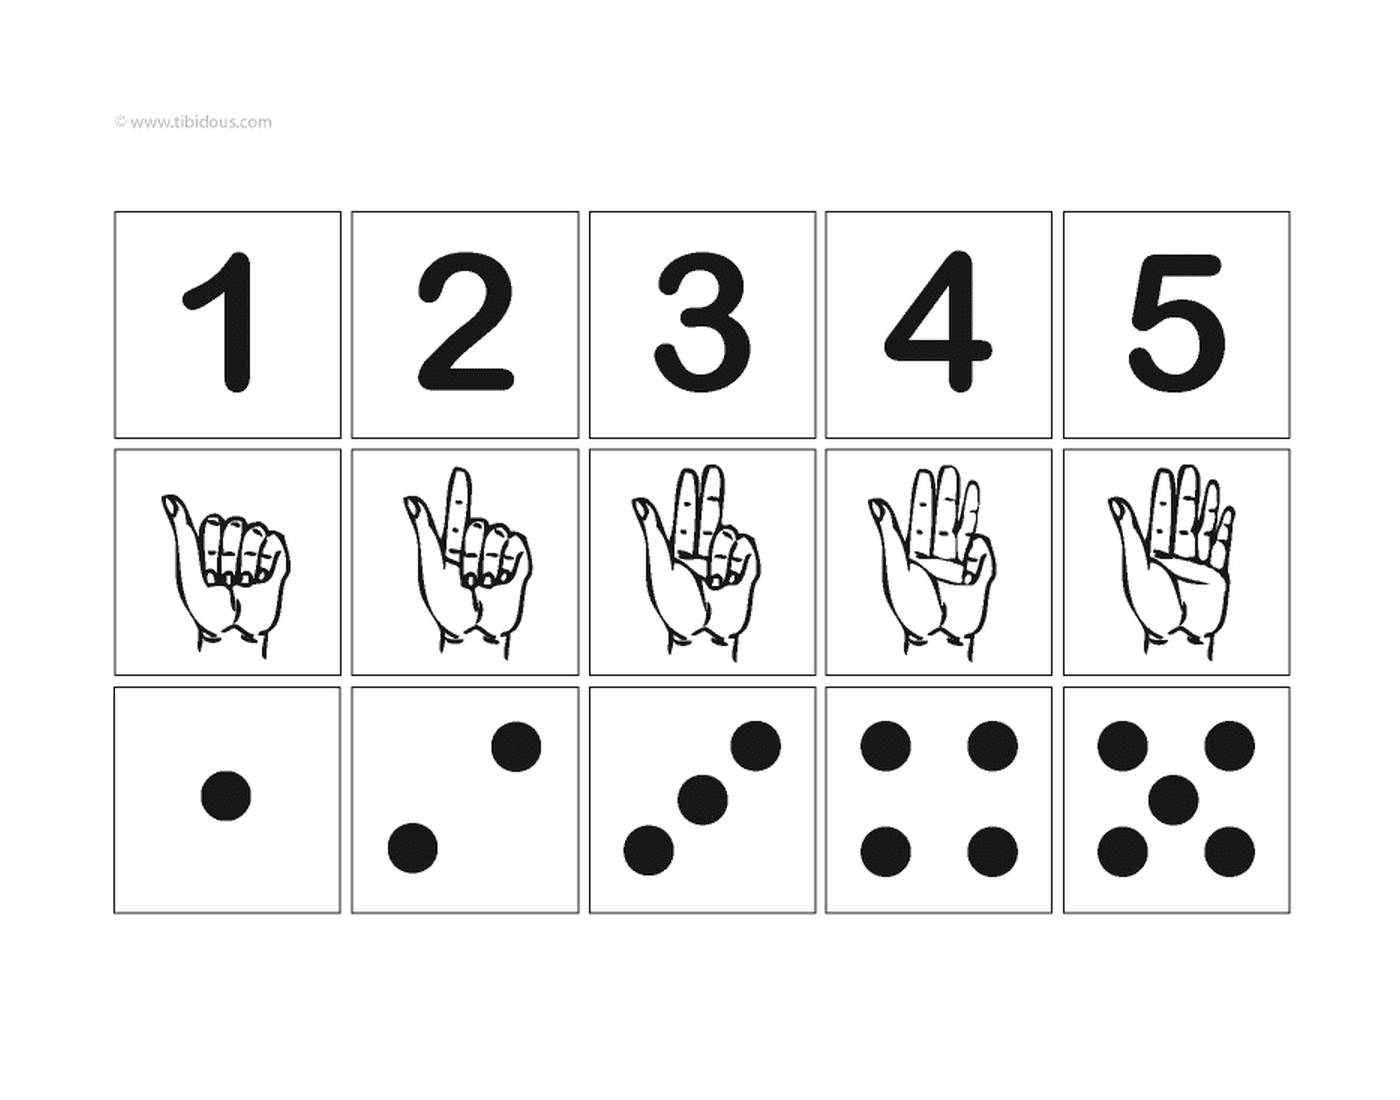 chiffre 1 a 5 avec illustration main chiffre points